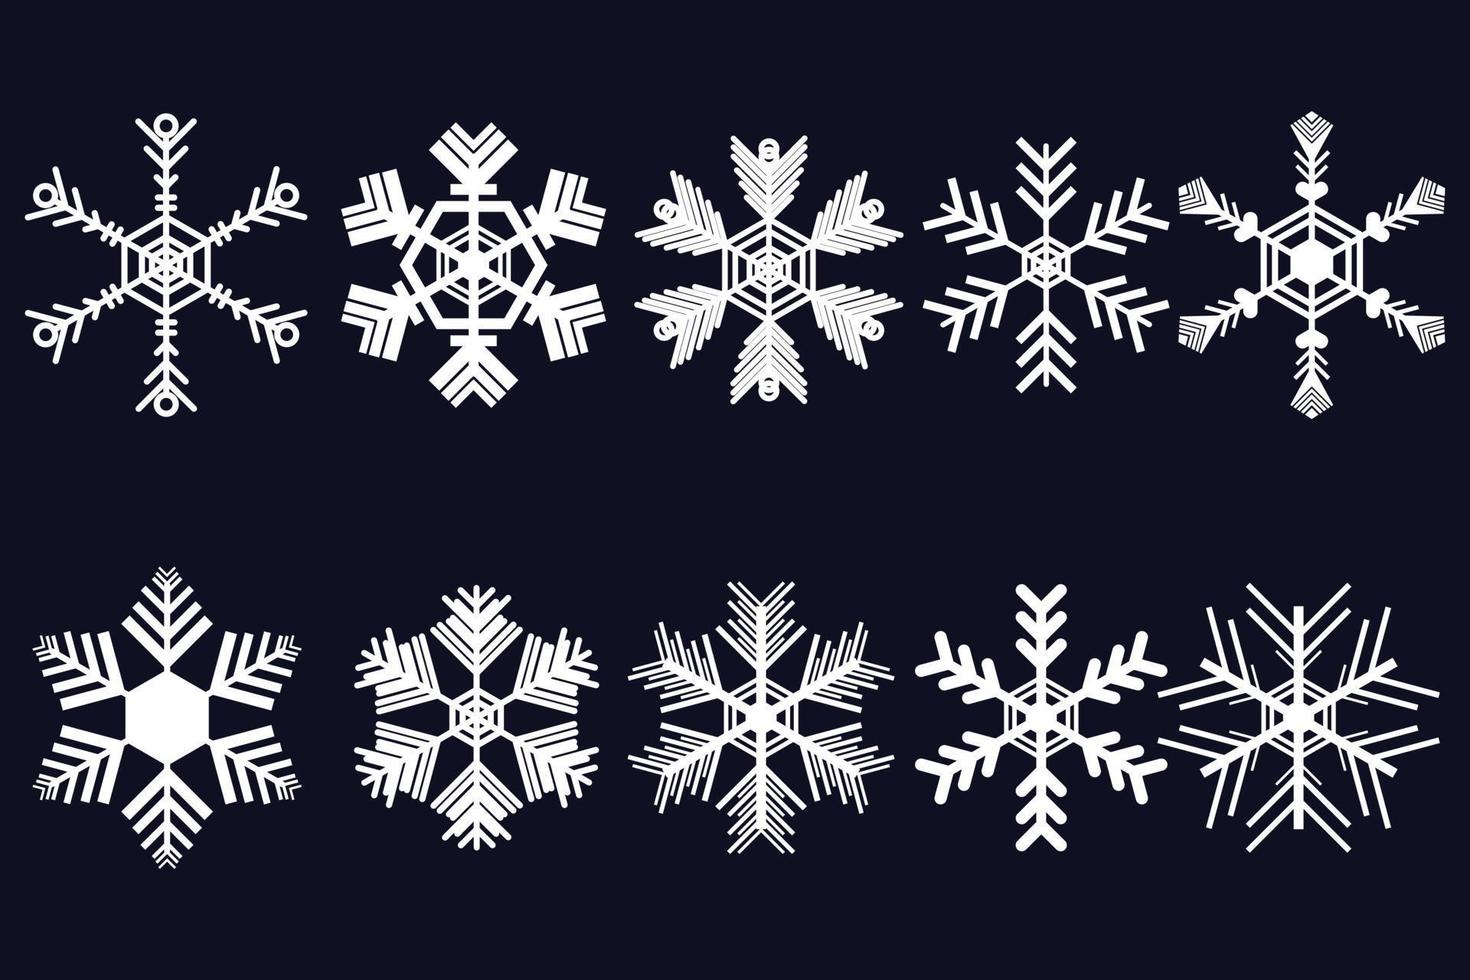 witte sneeuwvlok vector geïsoleerd op zwarte achtergrond, illustratie voor kerstkaart decoratie, winter concept